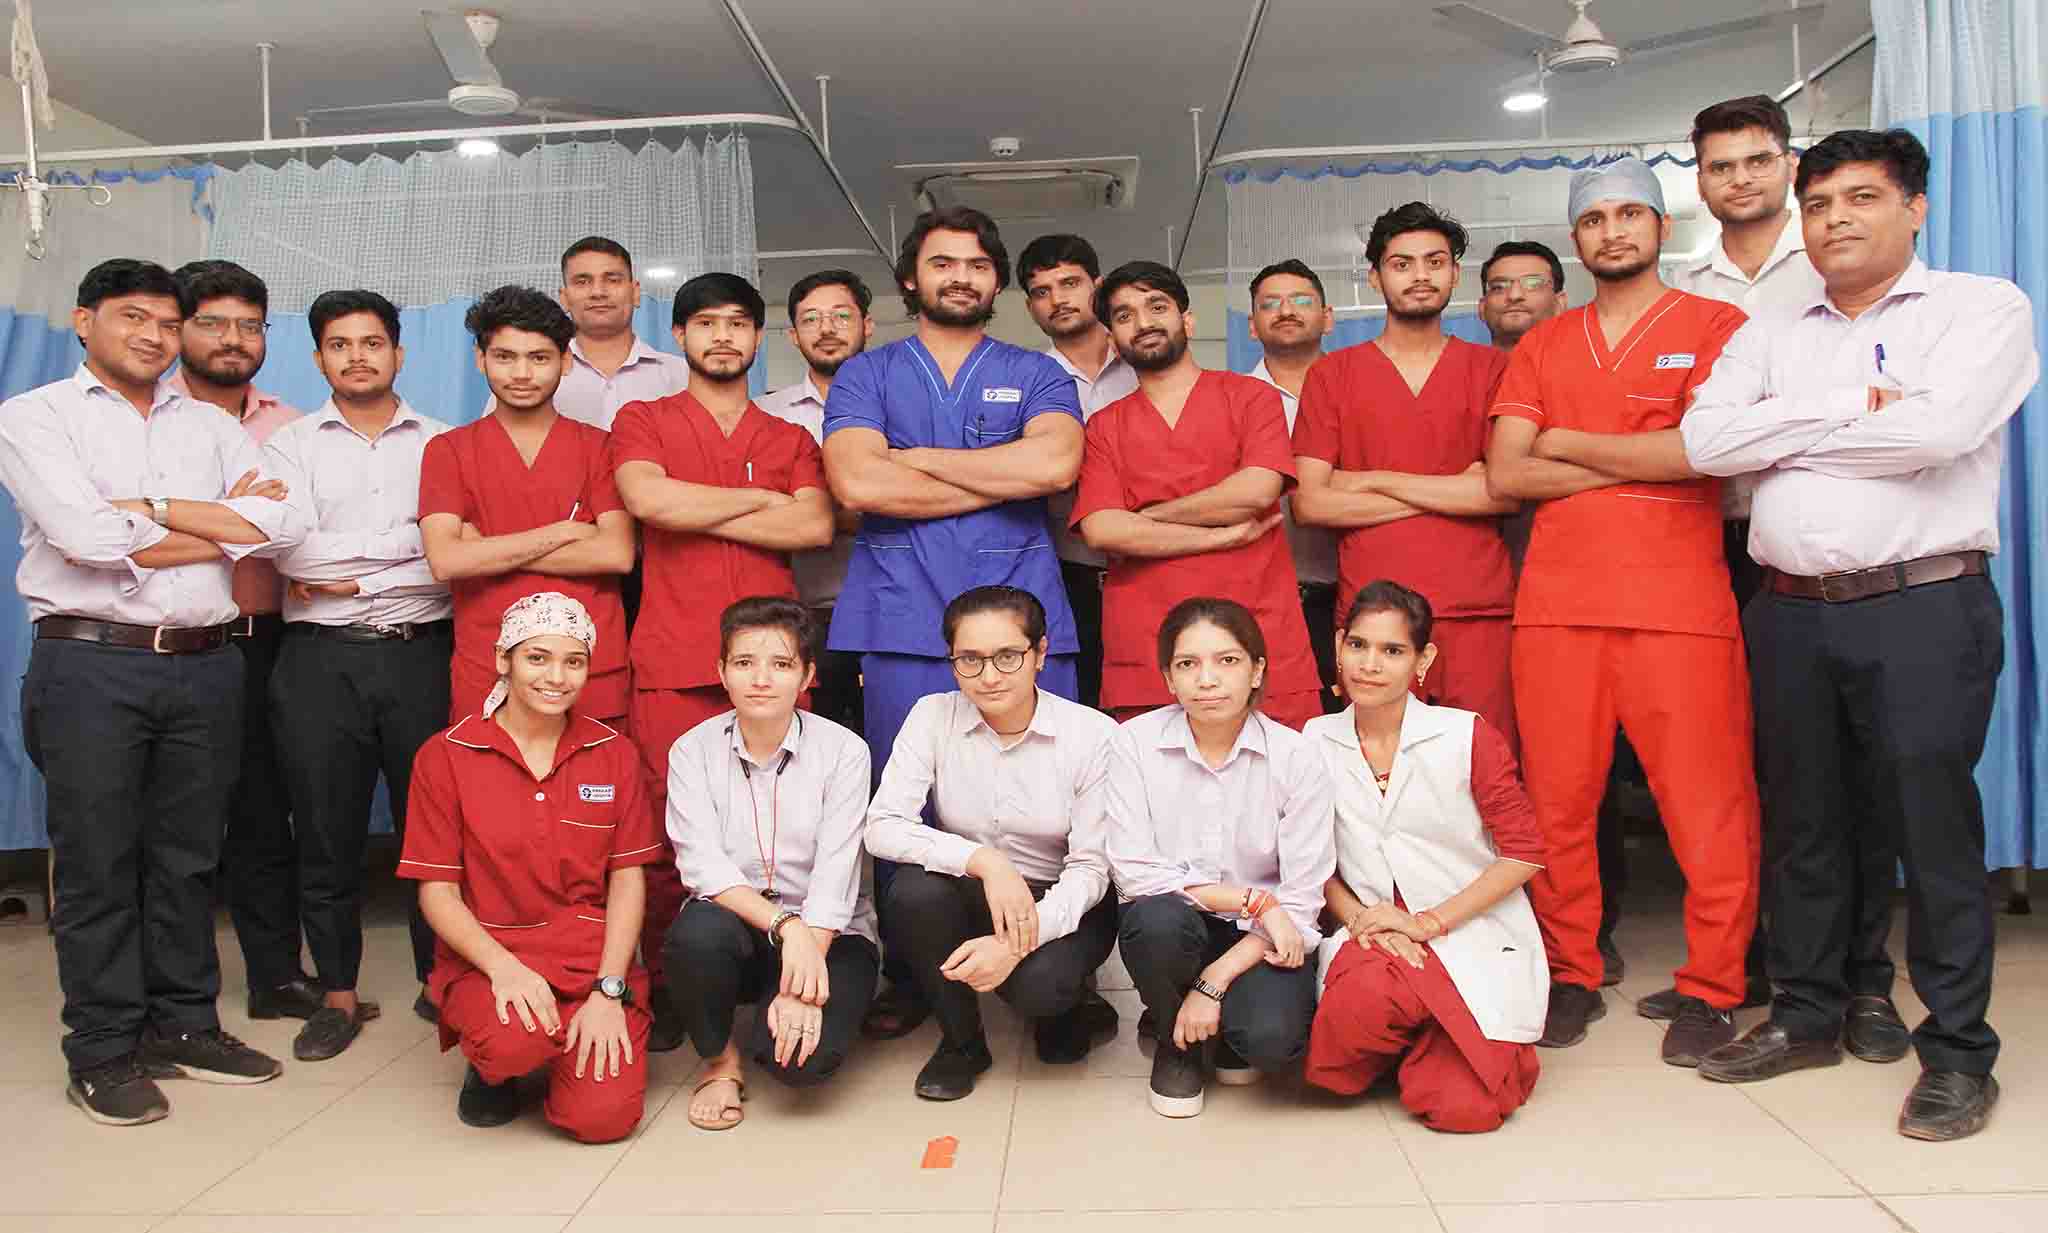 Group photo from prakash hospital